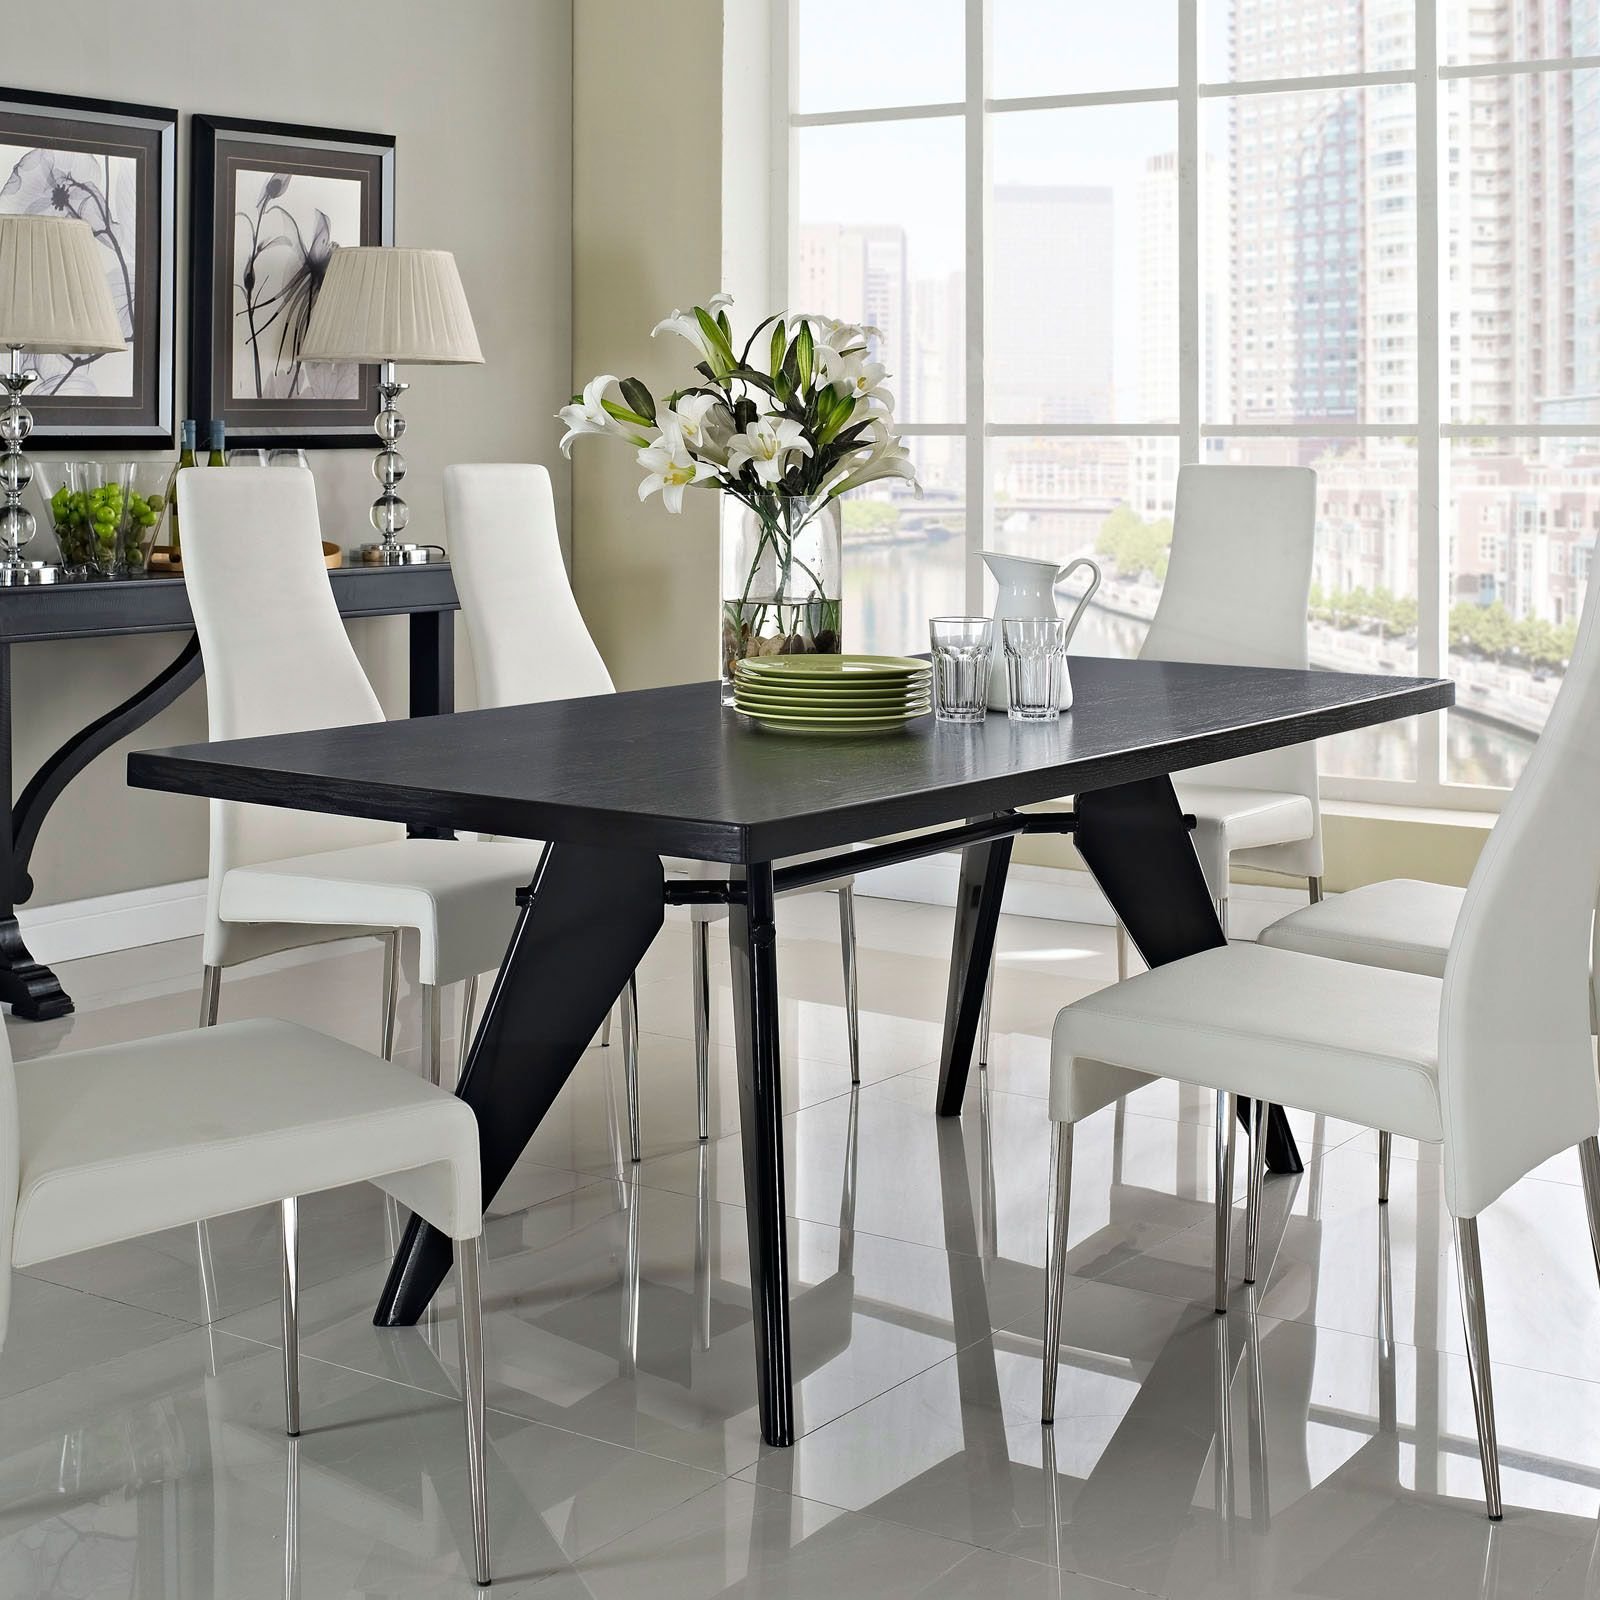 Обеденные столы светлые. Стол фирма JYSK Toledo Dining Table Grey Antique. Стол обеденный Winston Sandro Veneer 63. Обеденный стол в интерьере. Белый обеденный стол в интерьере.